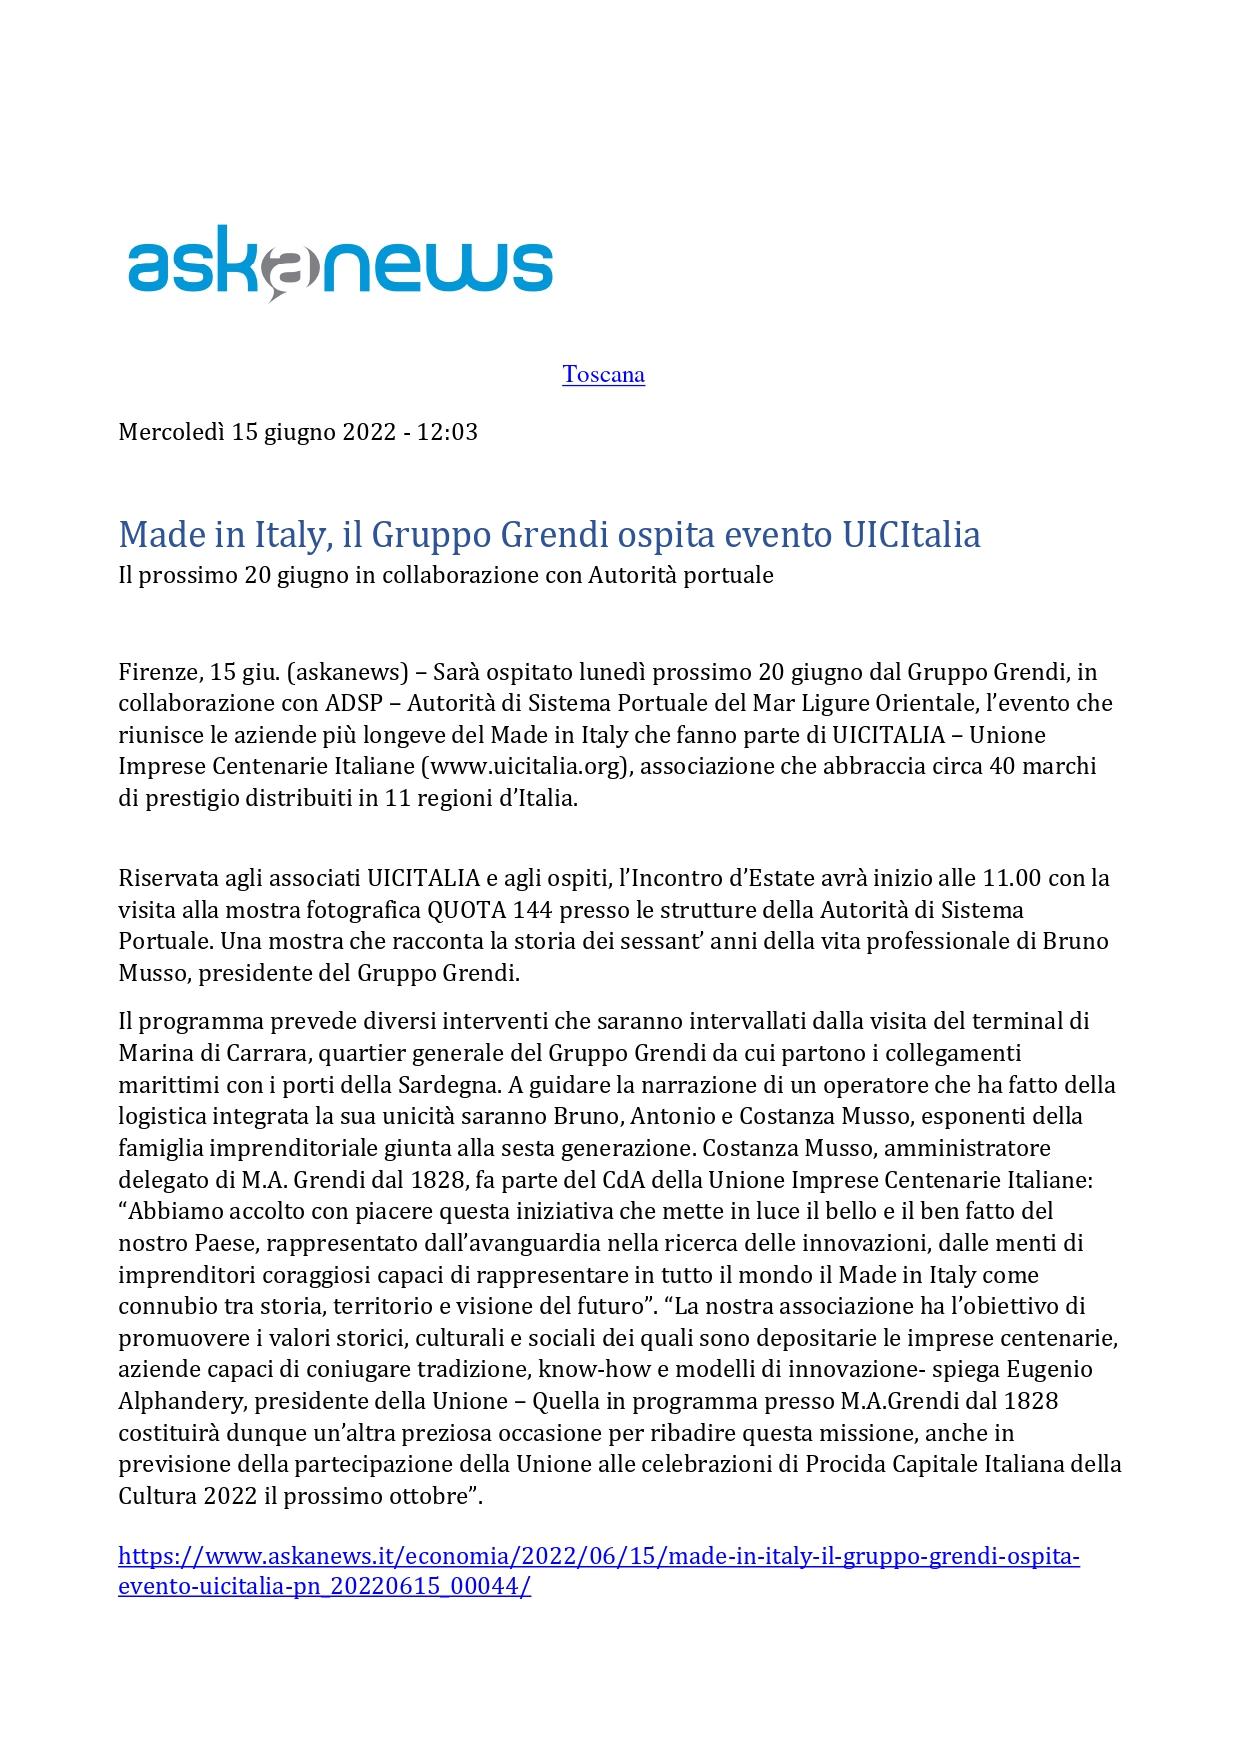 Askanews Made in Italy il Gruppo Grendi ospita evento UICITALIA 15 giugno 2022 page 0001